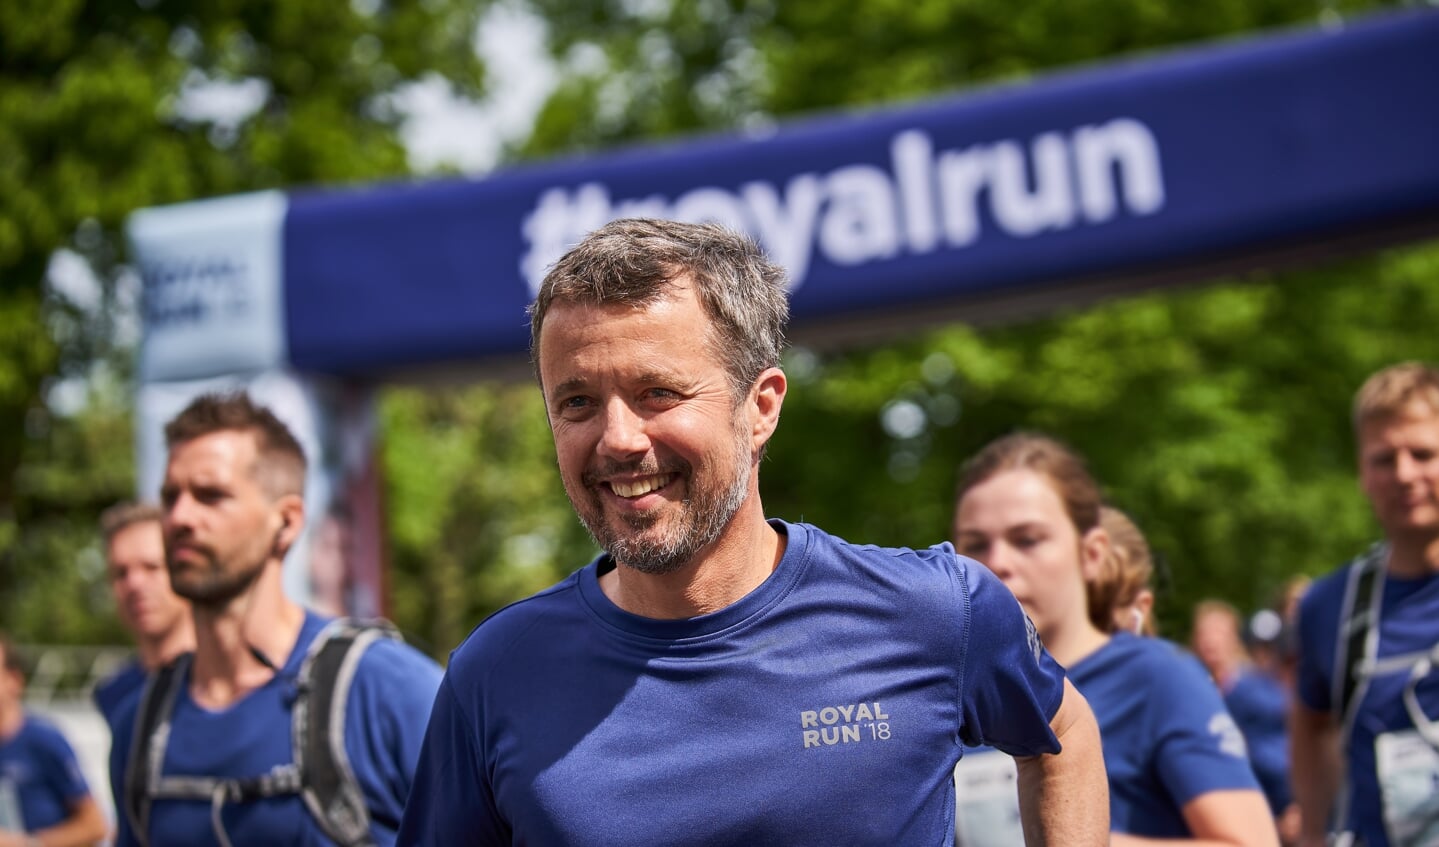 Kronprins Frederik er kendt som en yderst sportsglad mand. Royal Run blev første gang holdt i 2018 i anledning af hans 50-års fødselsdag.